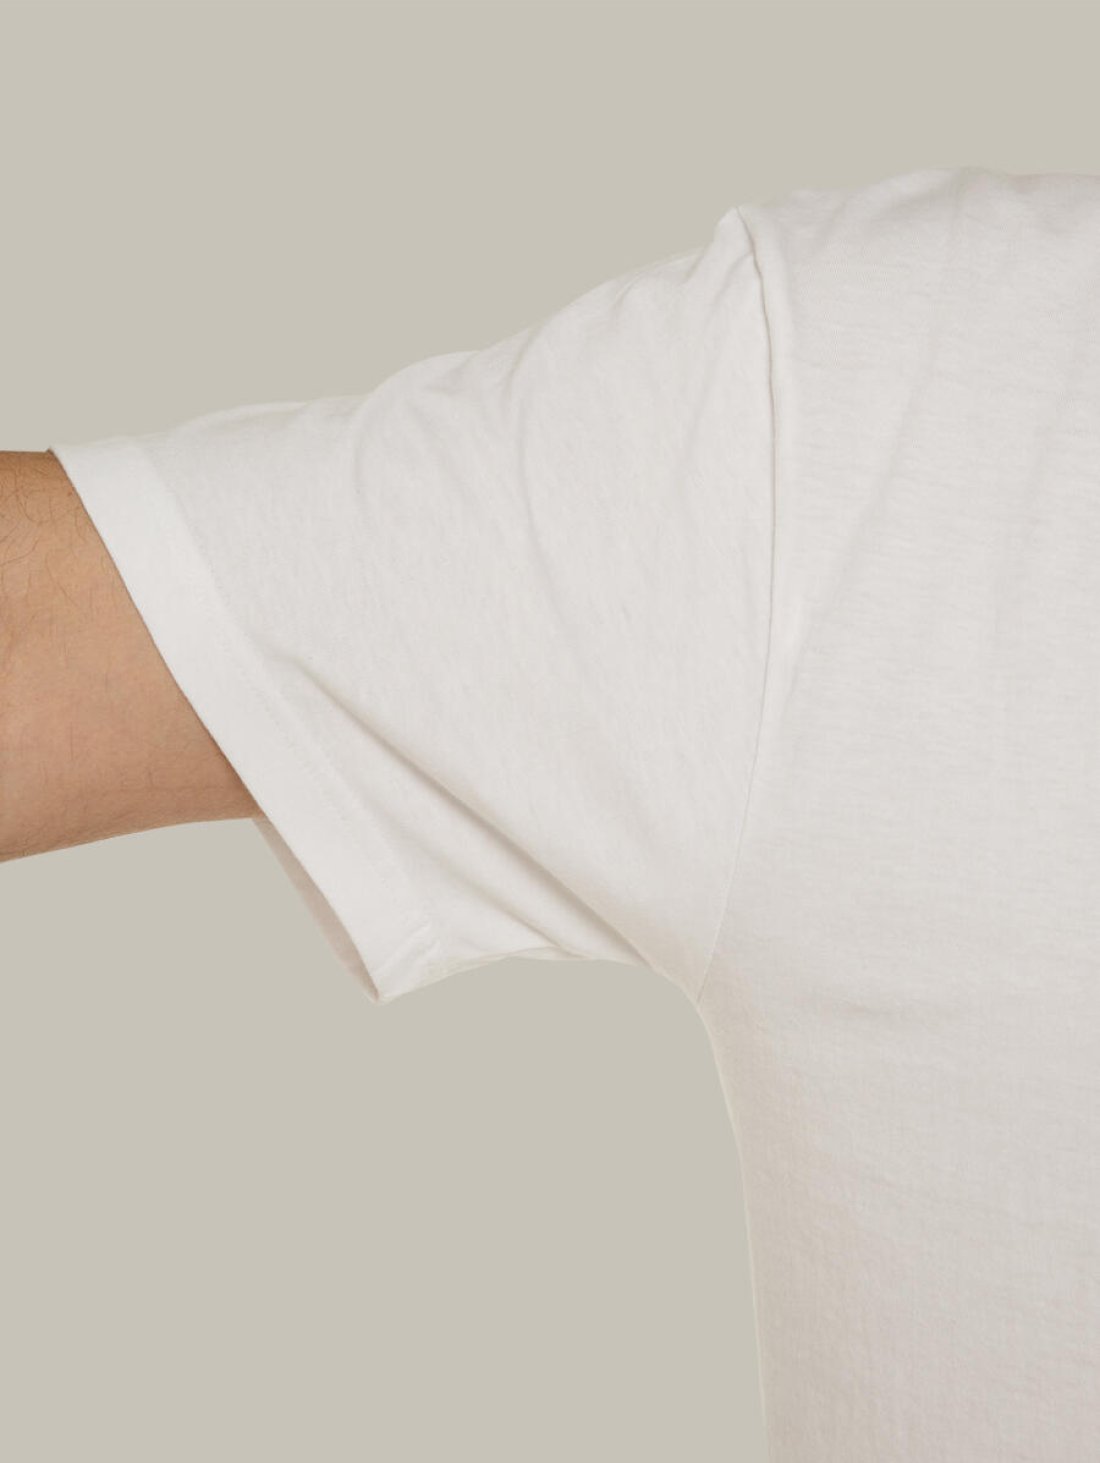 Чоловіча футболка, біла з принтом аватара Hopper 045